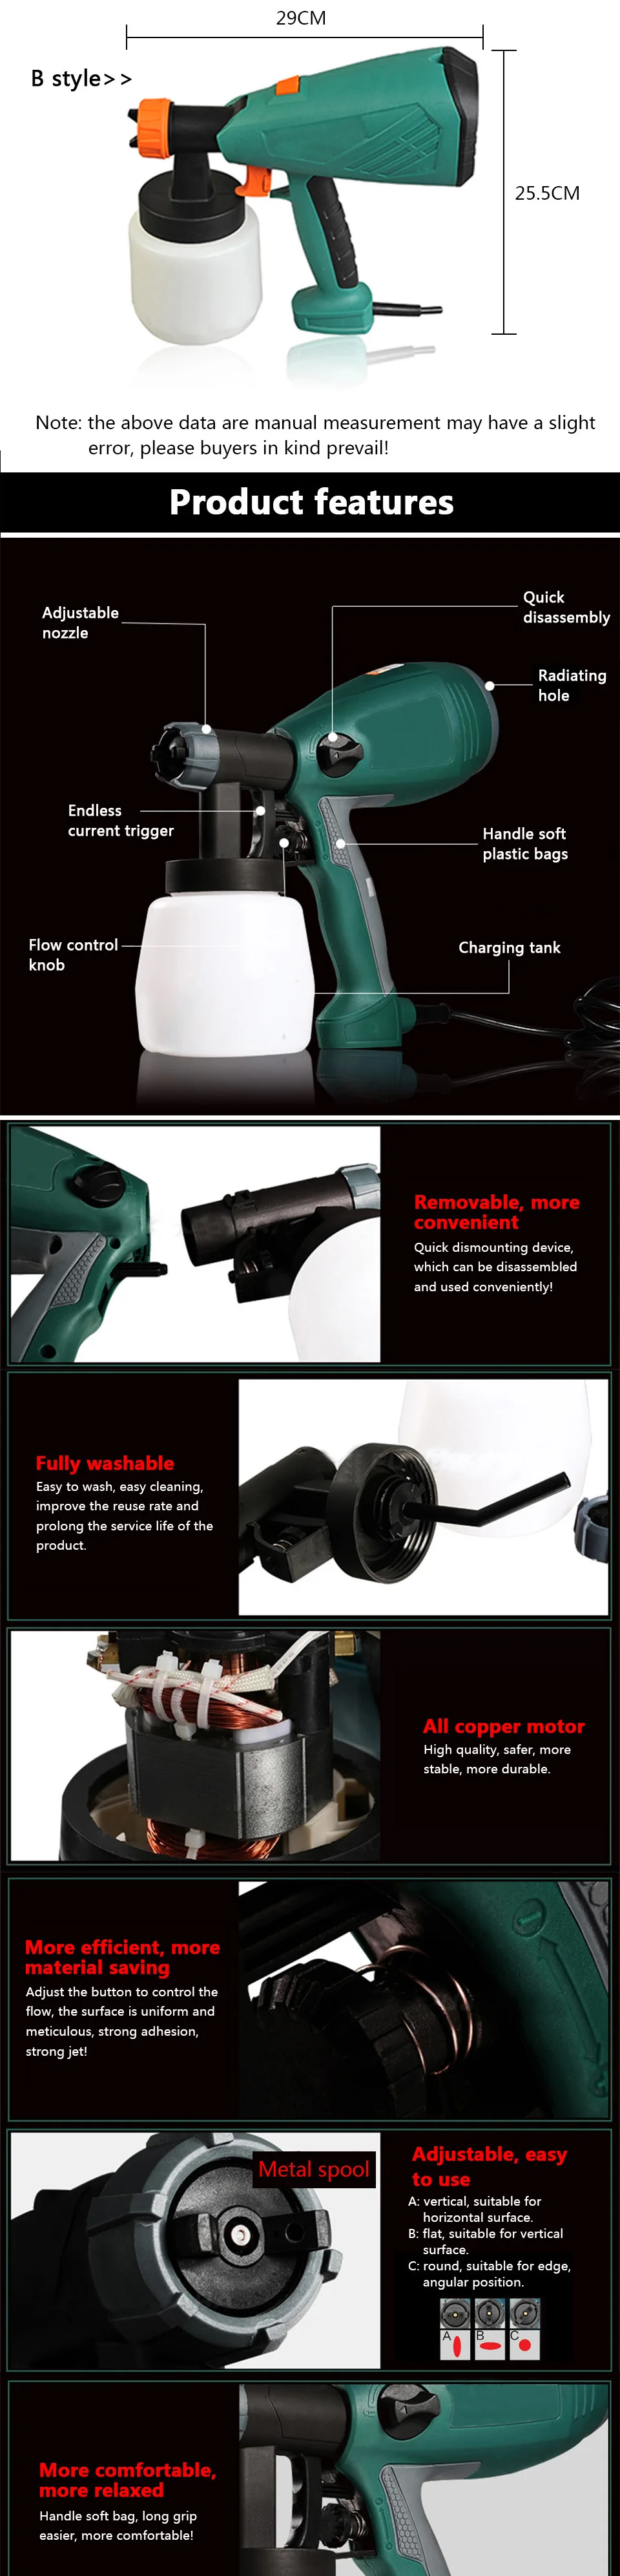 Автомобильный Электрический пистолет-распылитель с высоким уровнем распыления краски машина-распылитель для мебели автомобиля пистолет-распылитель